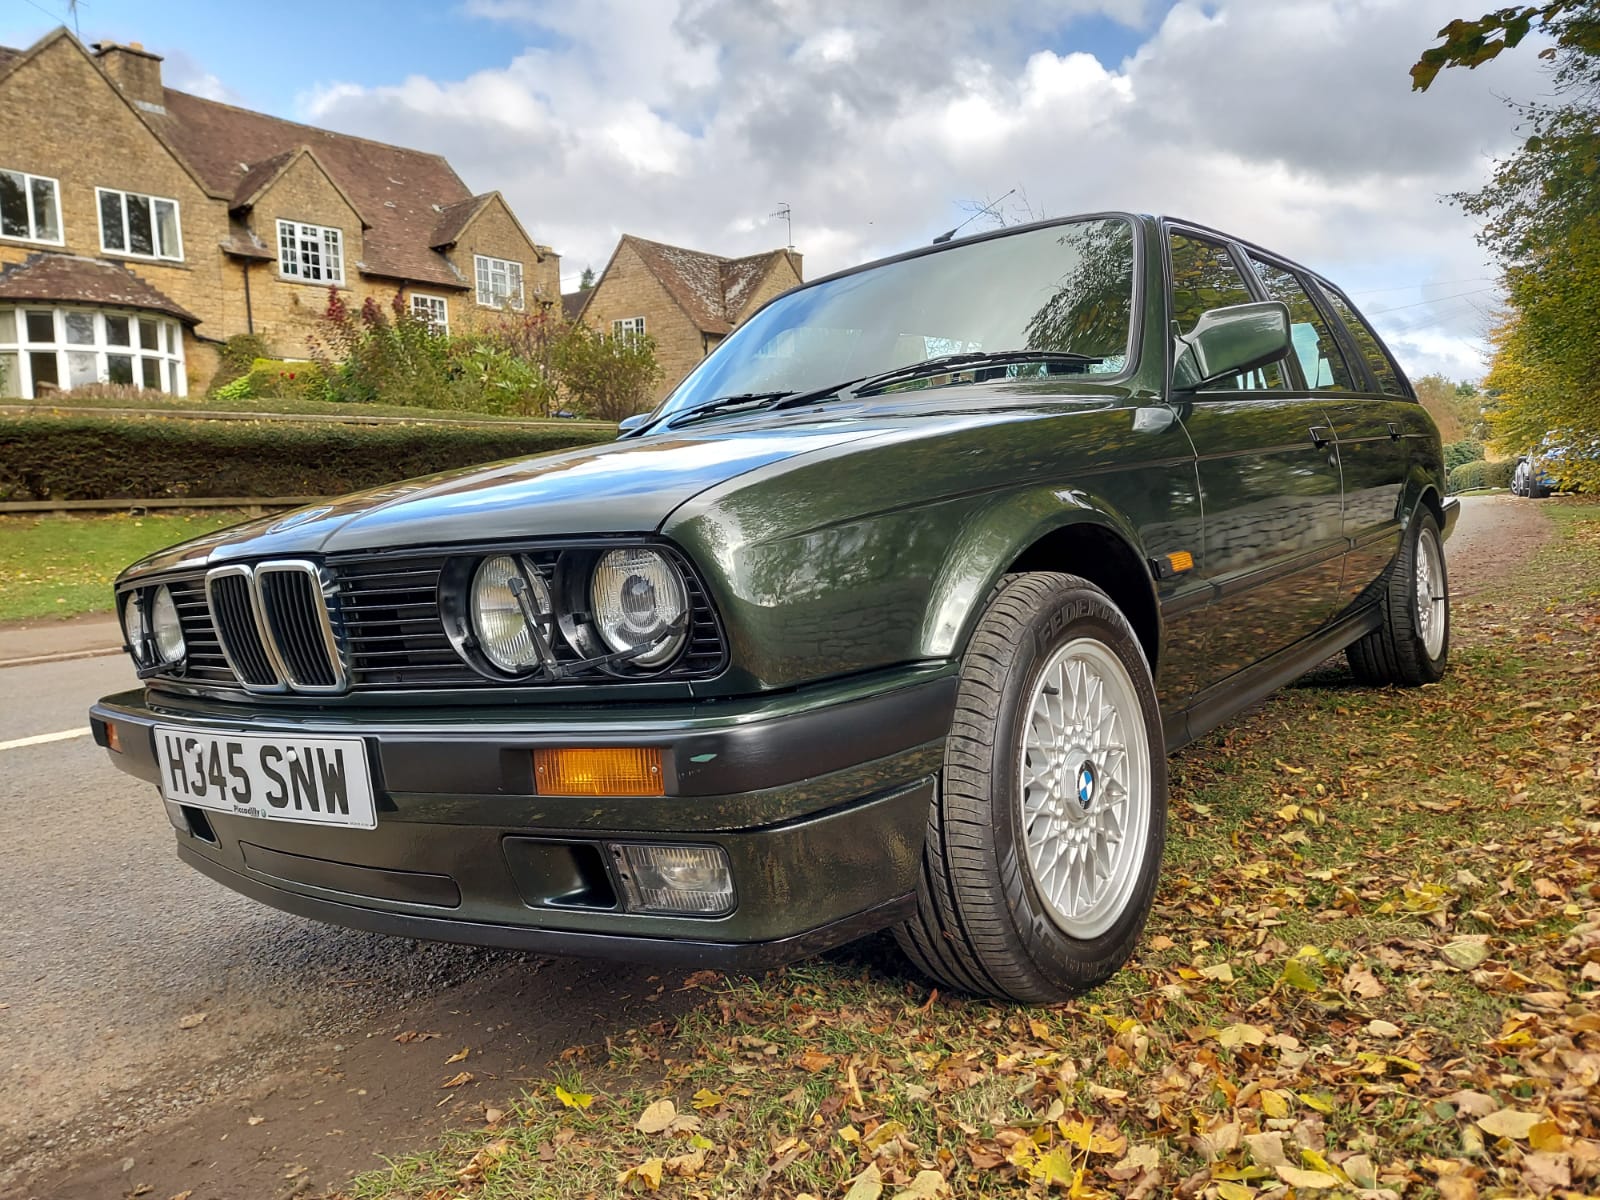 1990 BMW E30 320i Touring - Image 2 of 12